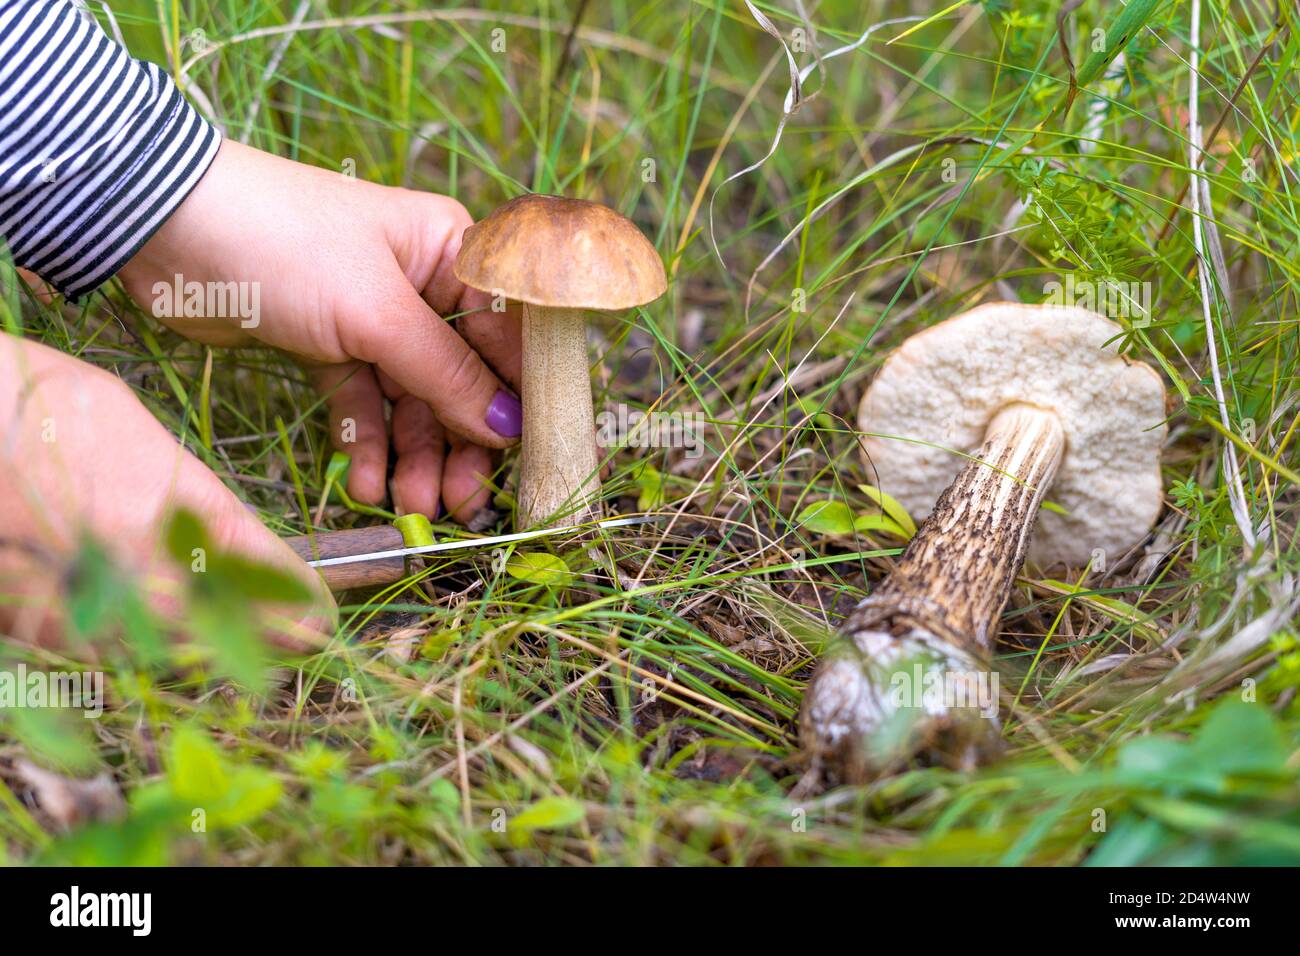 Le mani delle donne da vicino per raccogliere i funghi nella foresta. Una donna taglia un fungo con un coltello, un altro fungo è sdraiato sull'erba. Vista ravvicinata. Messa a fuoco selettiva. Foto Stock